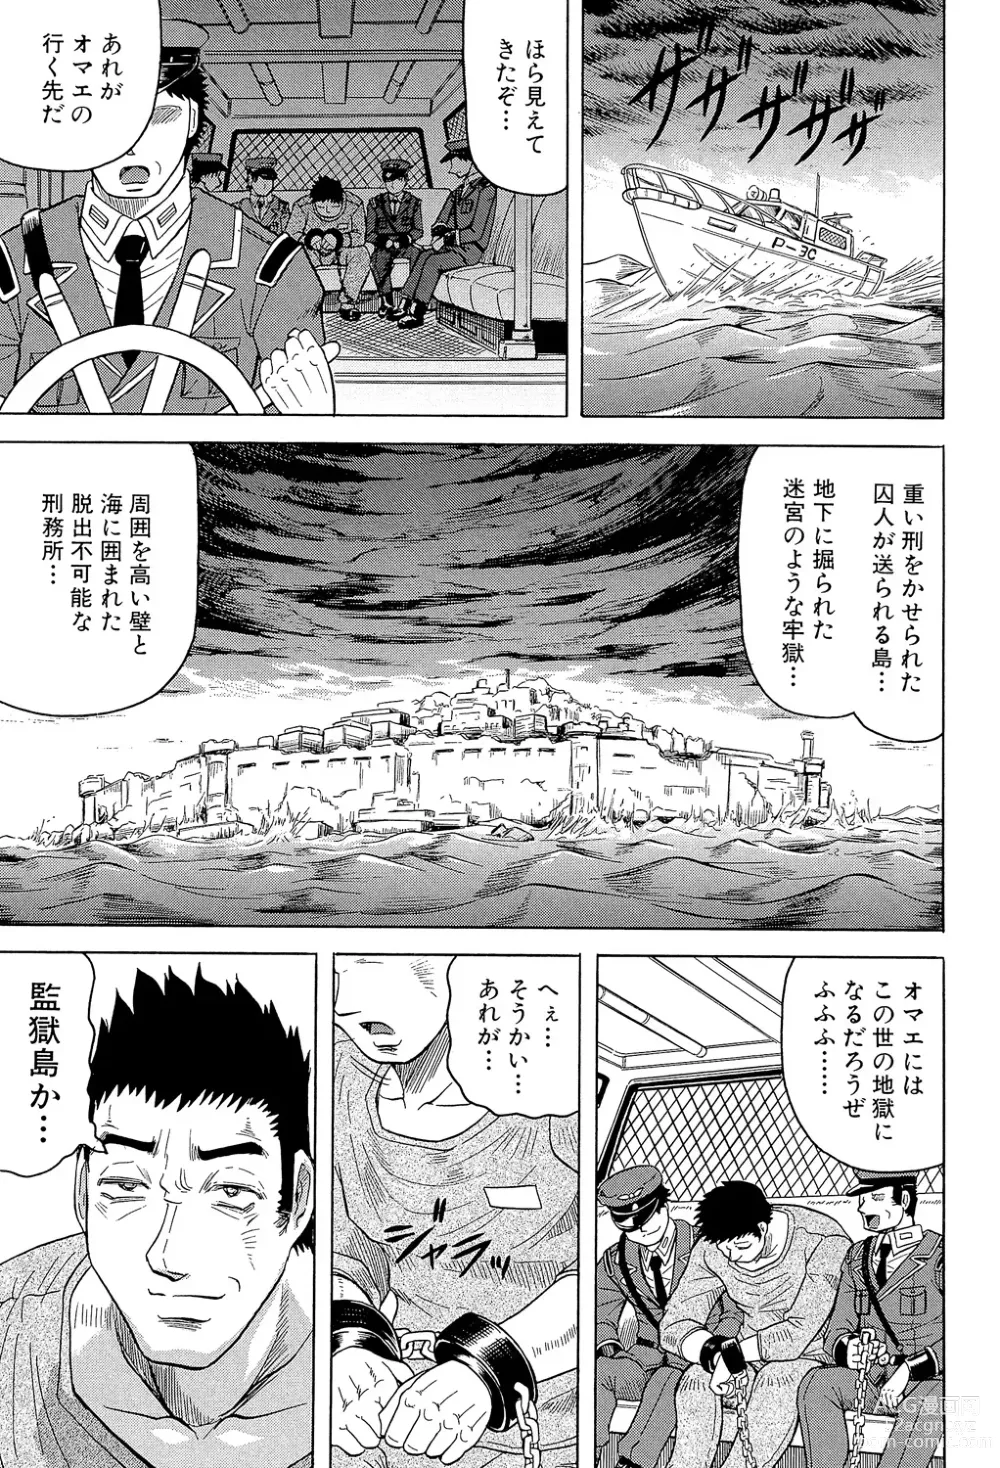 Page 7 of manga Kangokujima